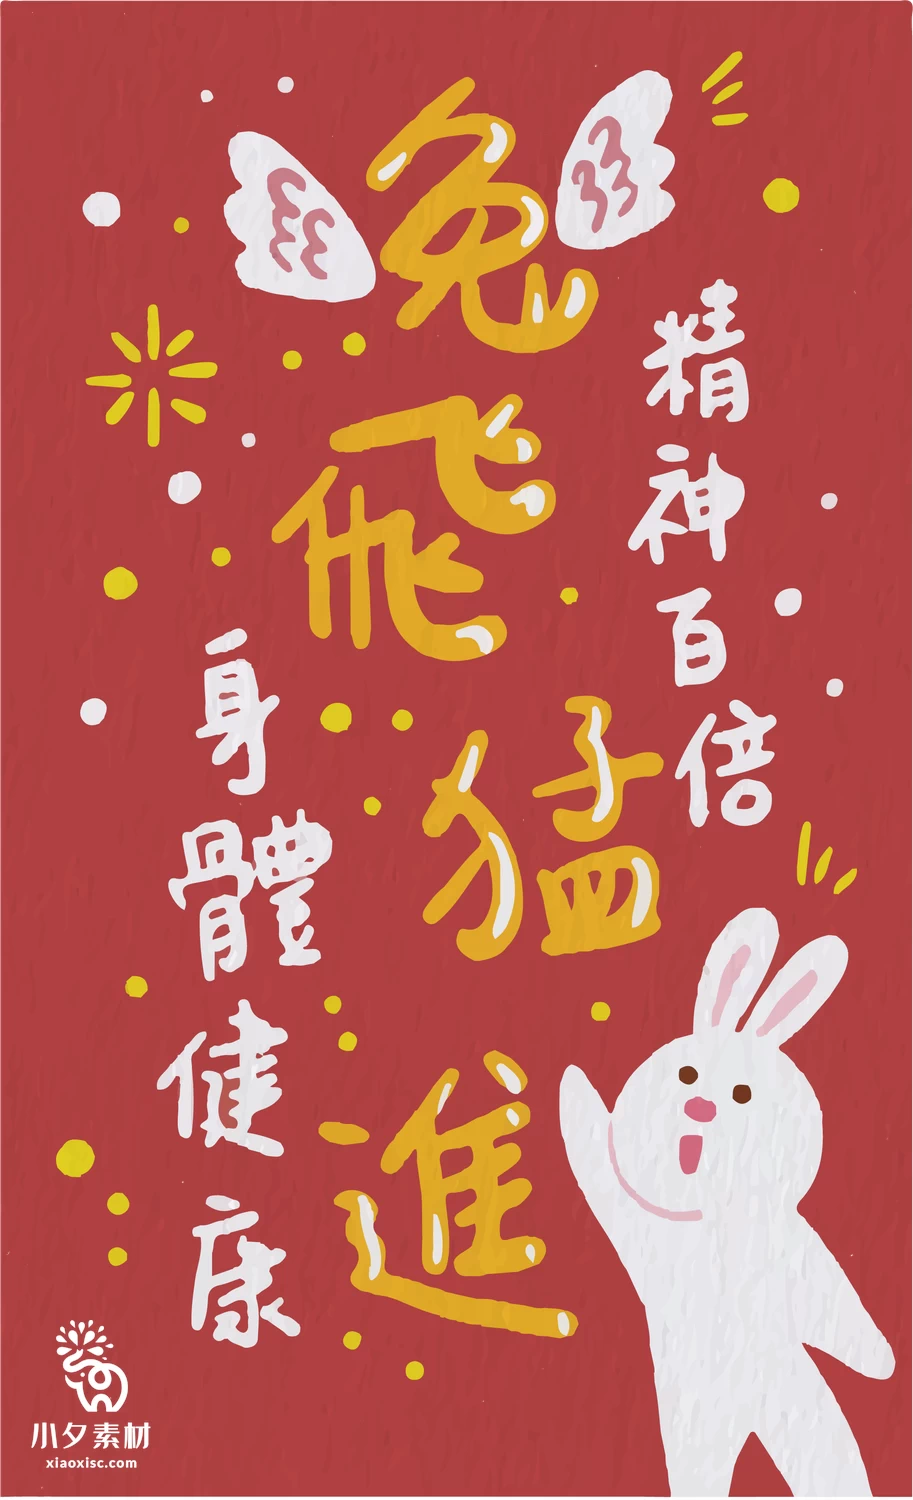 2023年兔年大吉新年红色喜庆好运暴富图案创意海报AI矢量设计素材【008】